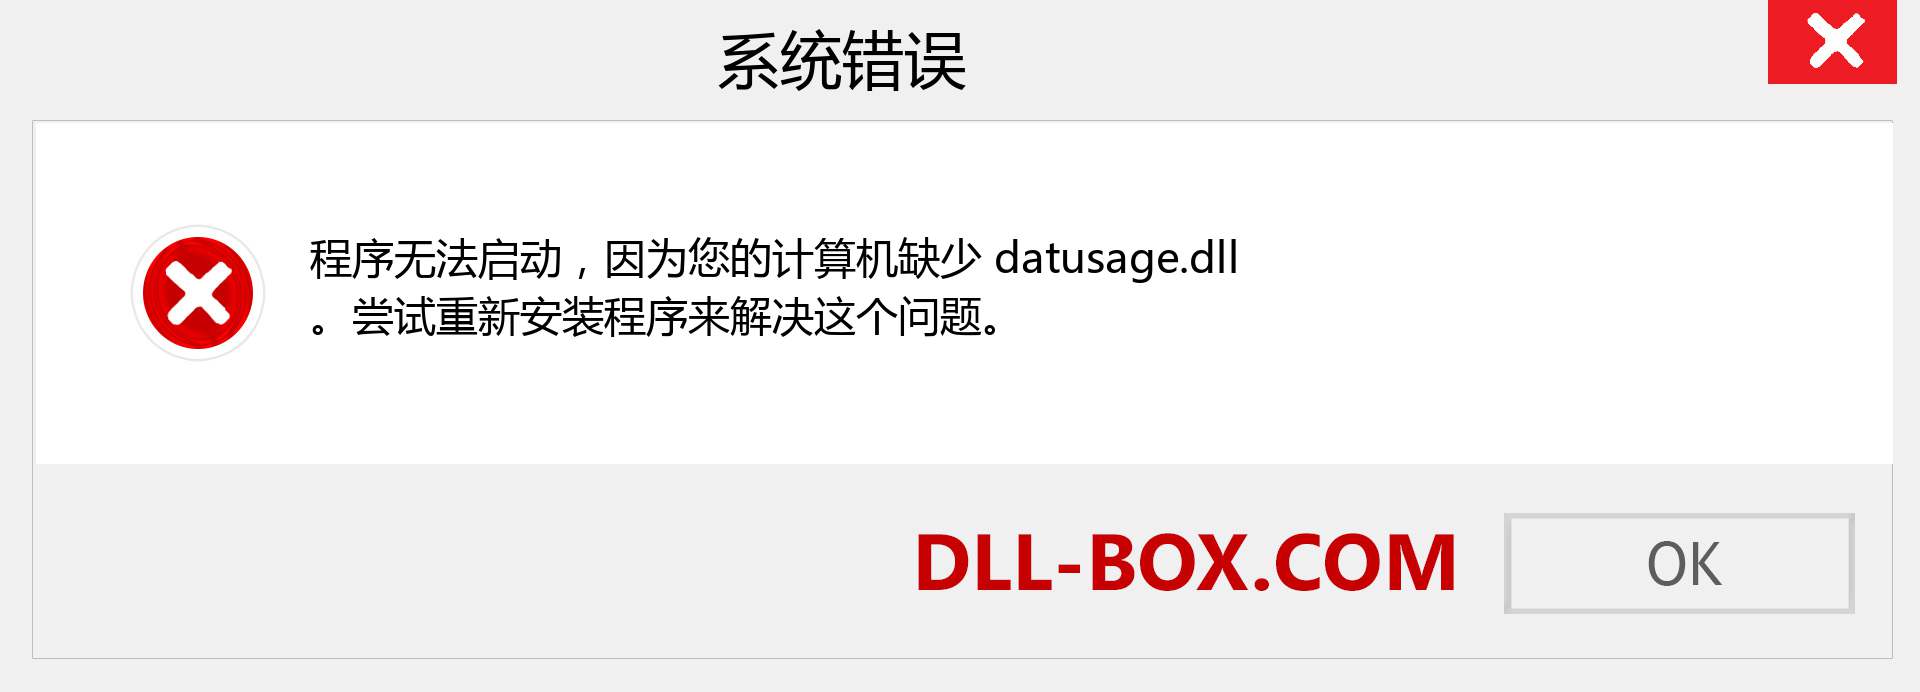 datusage.dll 文件丢失？。 适用于 Windows 7、8、10 的下载 - 修复 Windows、照片、图像上的 datusage dll 丢失错误